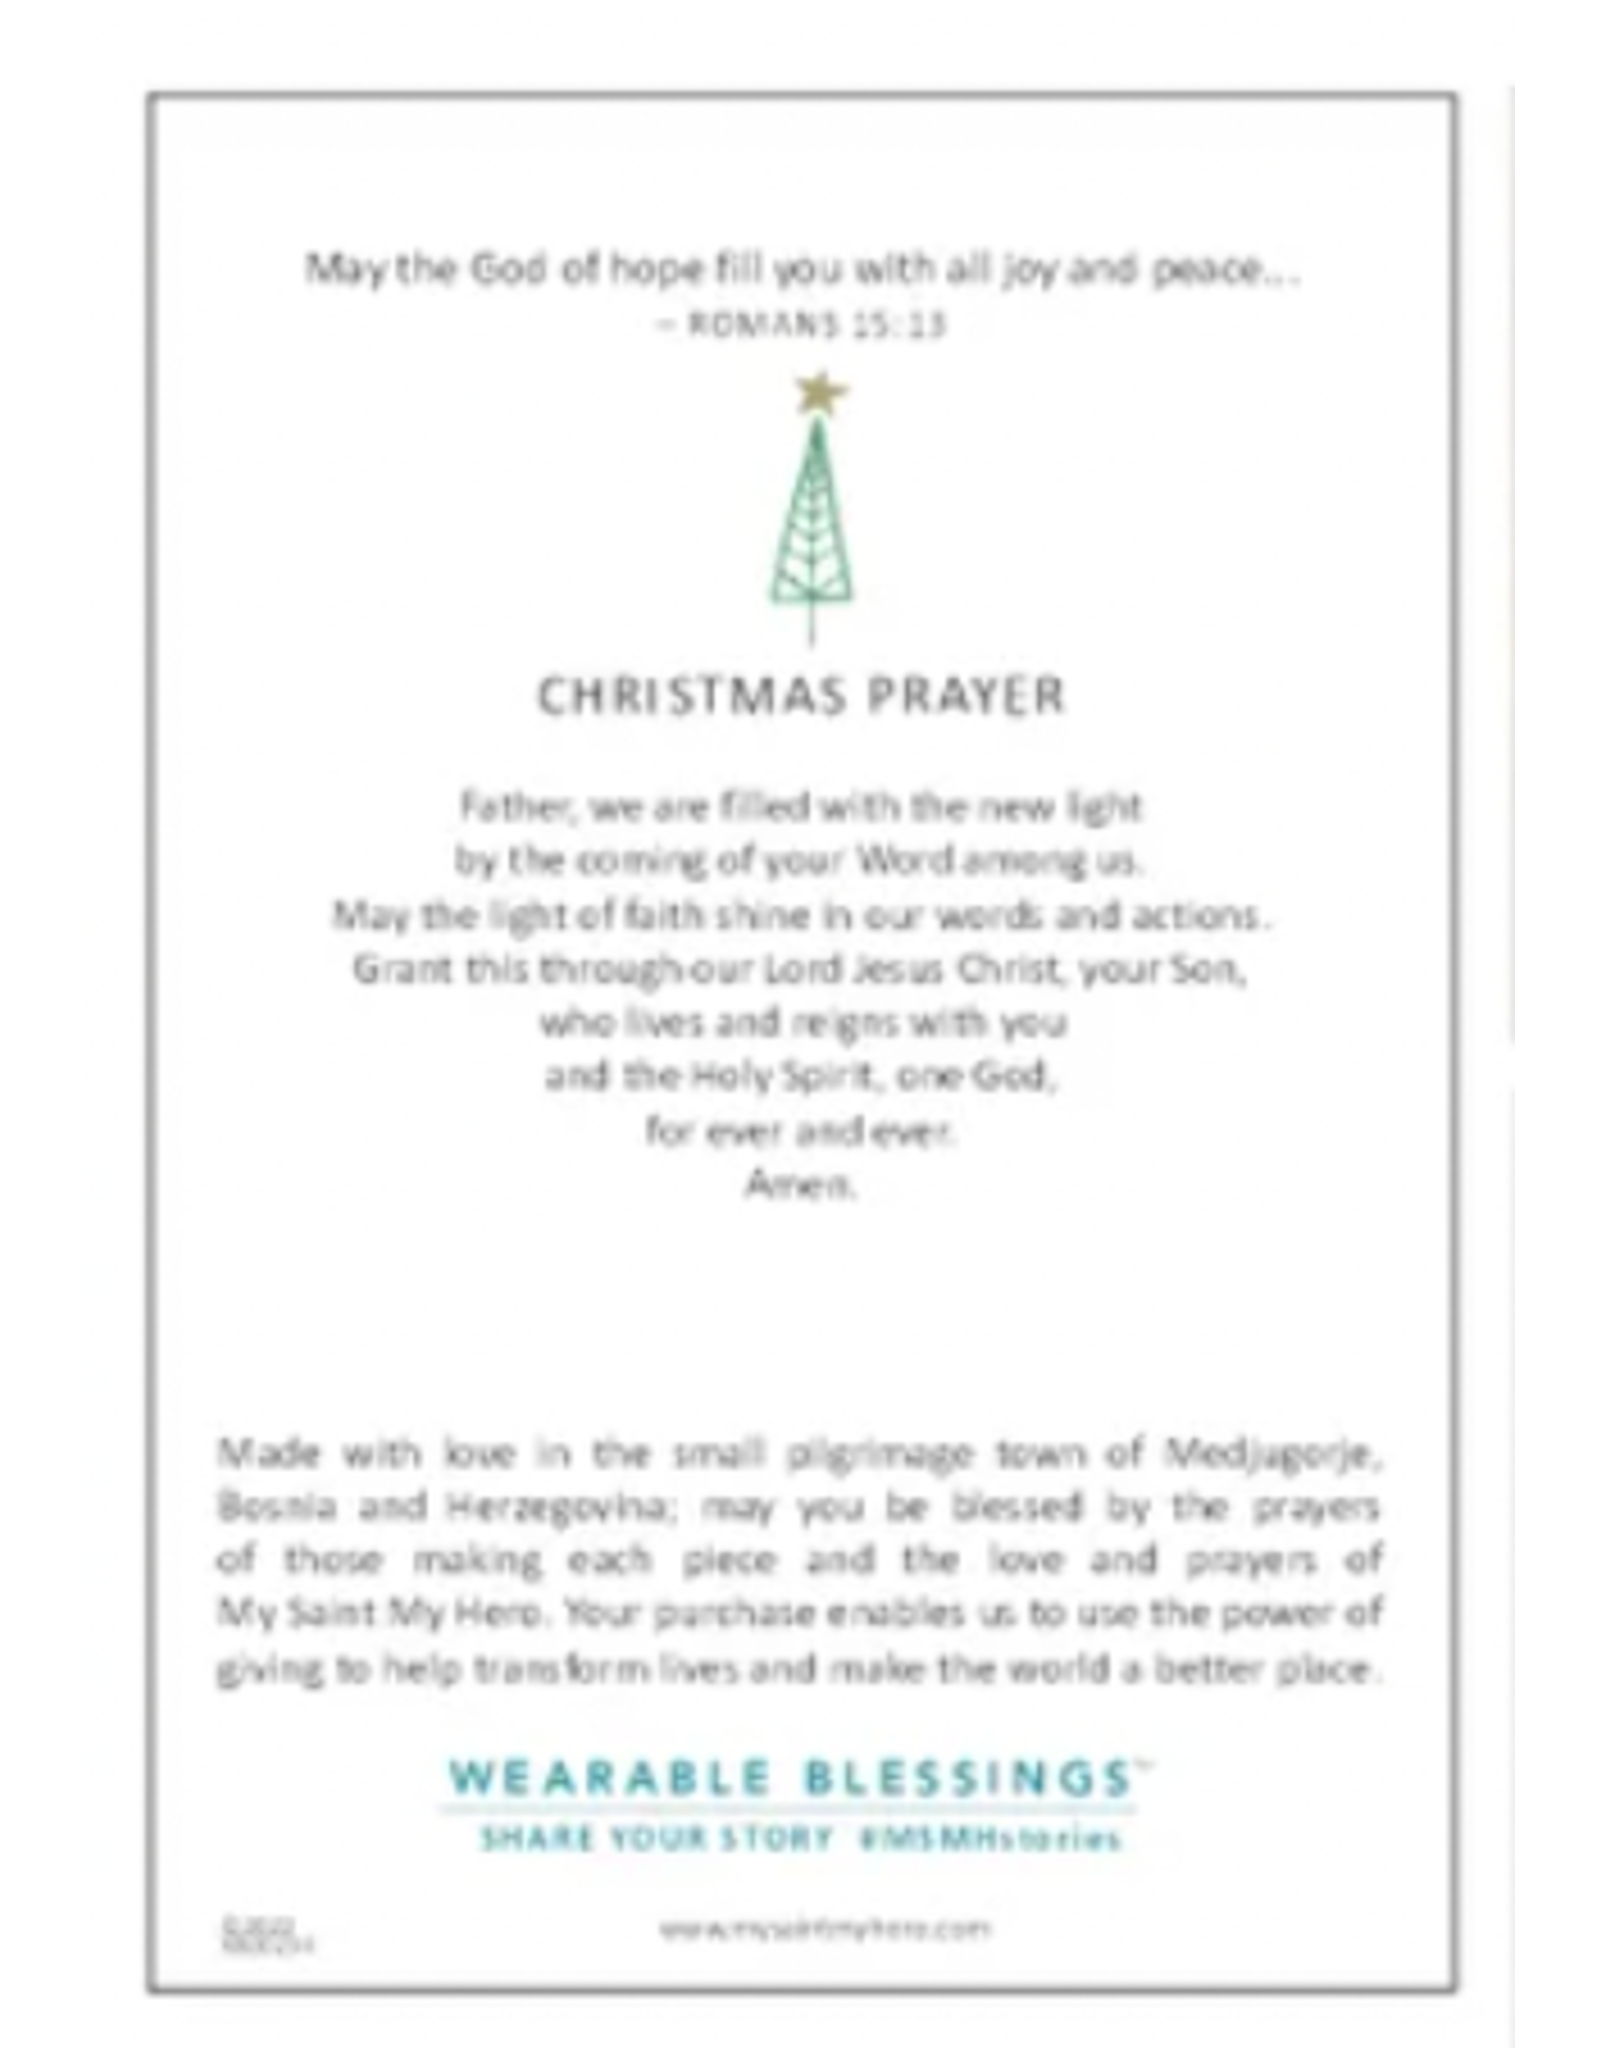 Christmas Blessing Bracelet Blessings of Joy, with Christmas Prayer